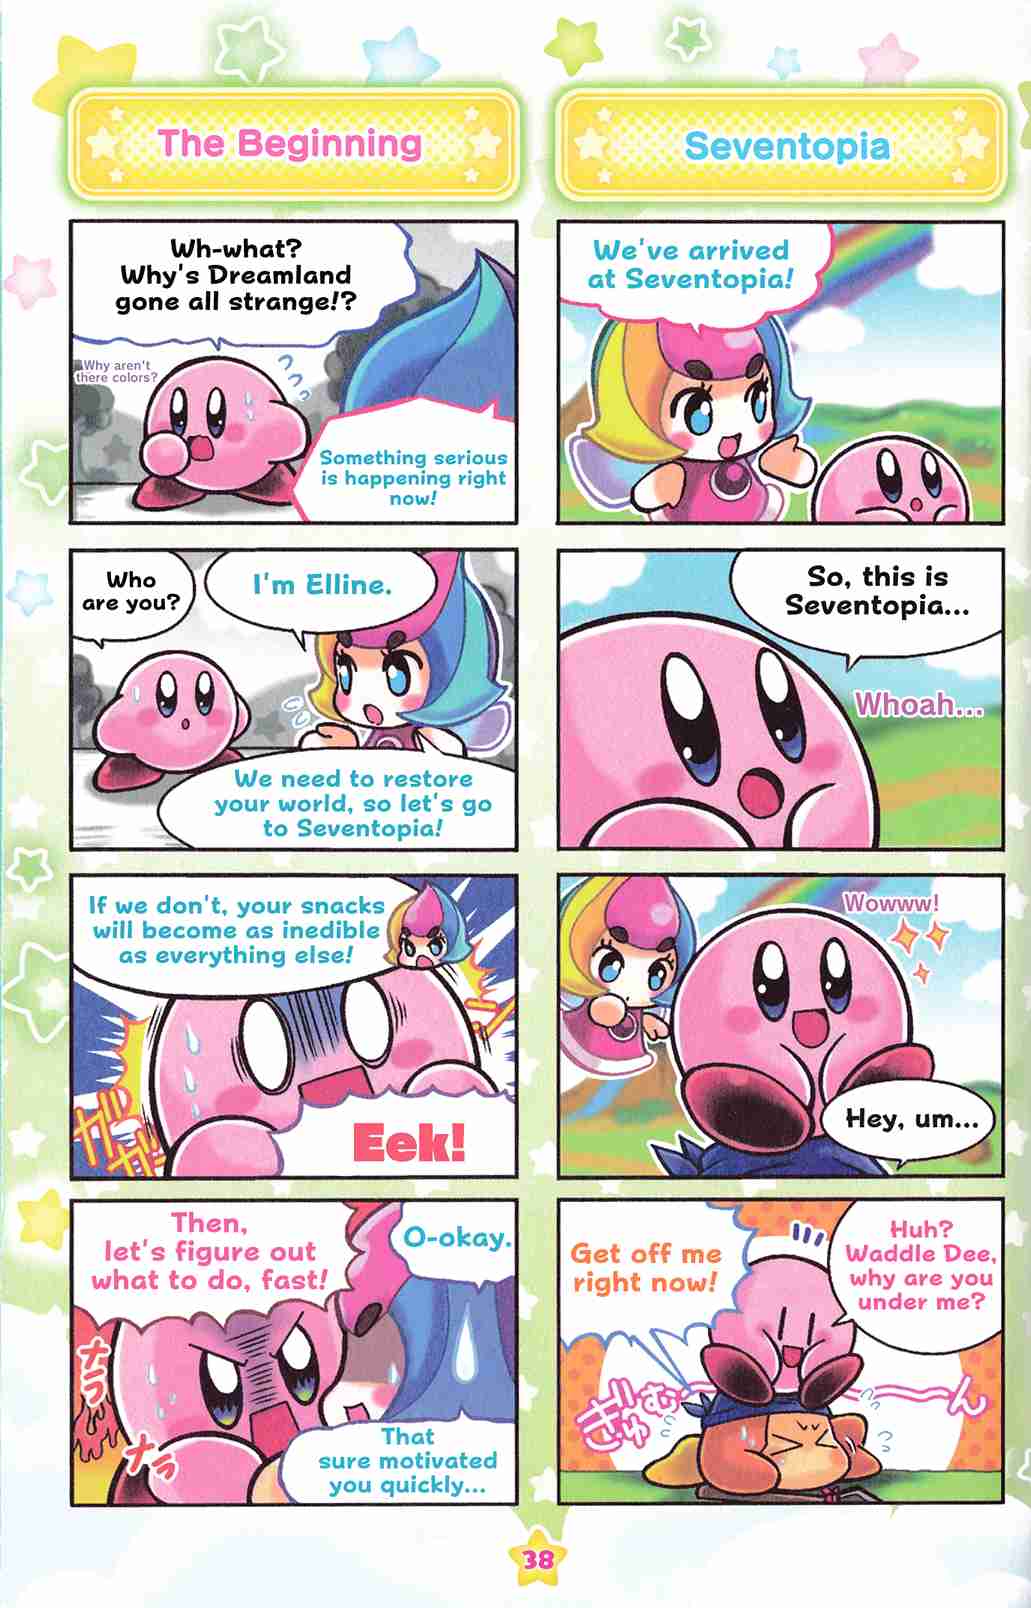 Hoshi no Kirby KiraKira★Pupupu World Vol. 1 Ch. 2 Kirby and the Rainbow Curse